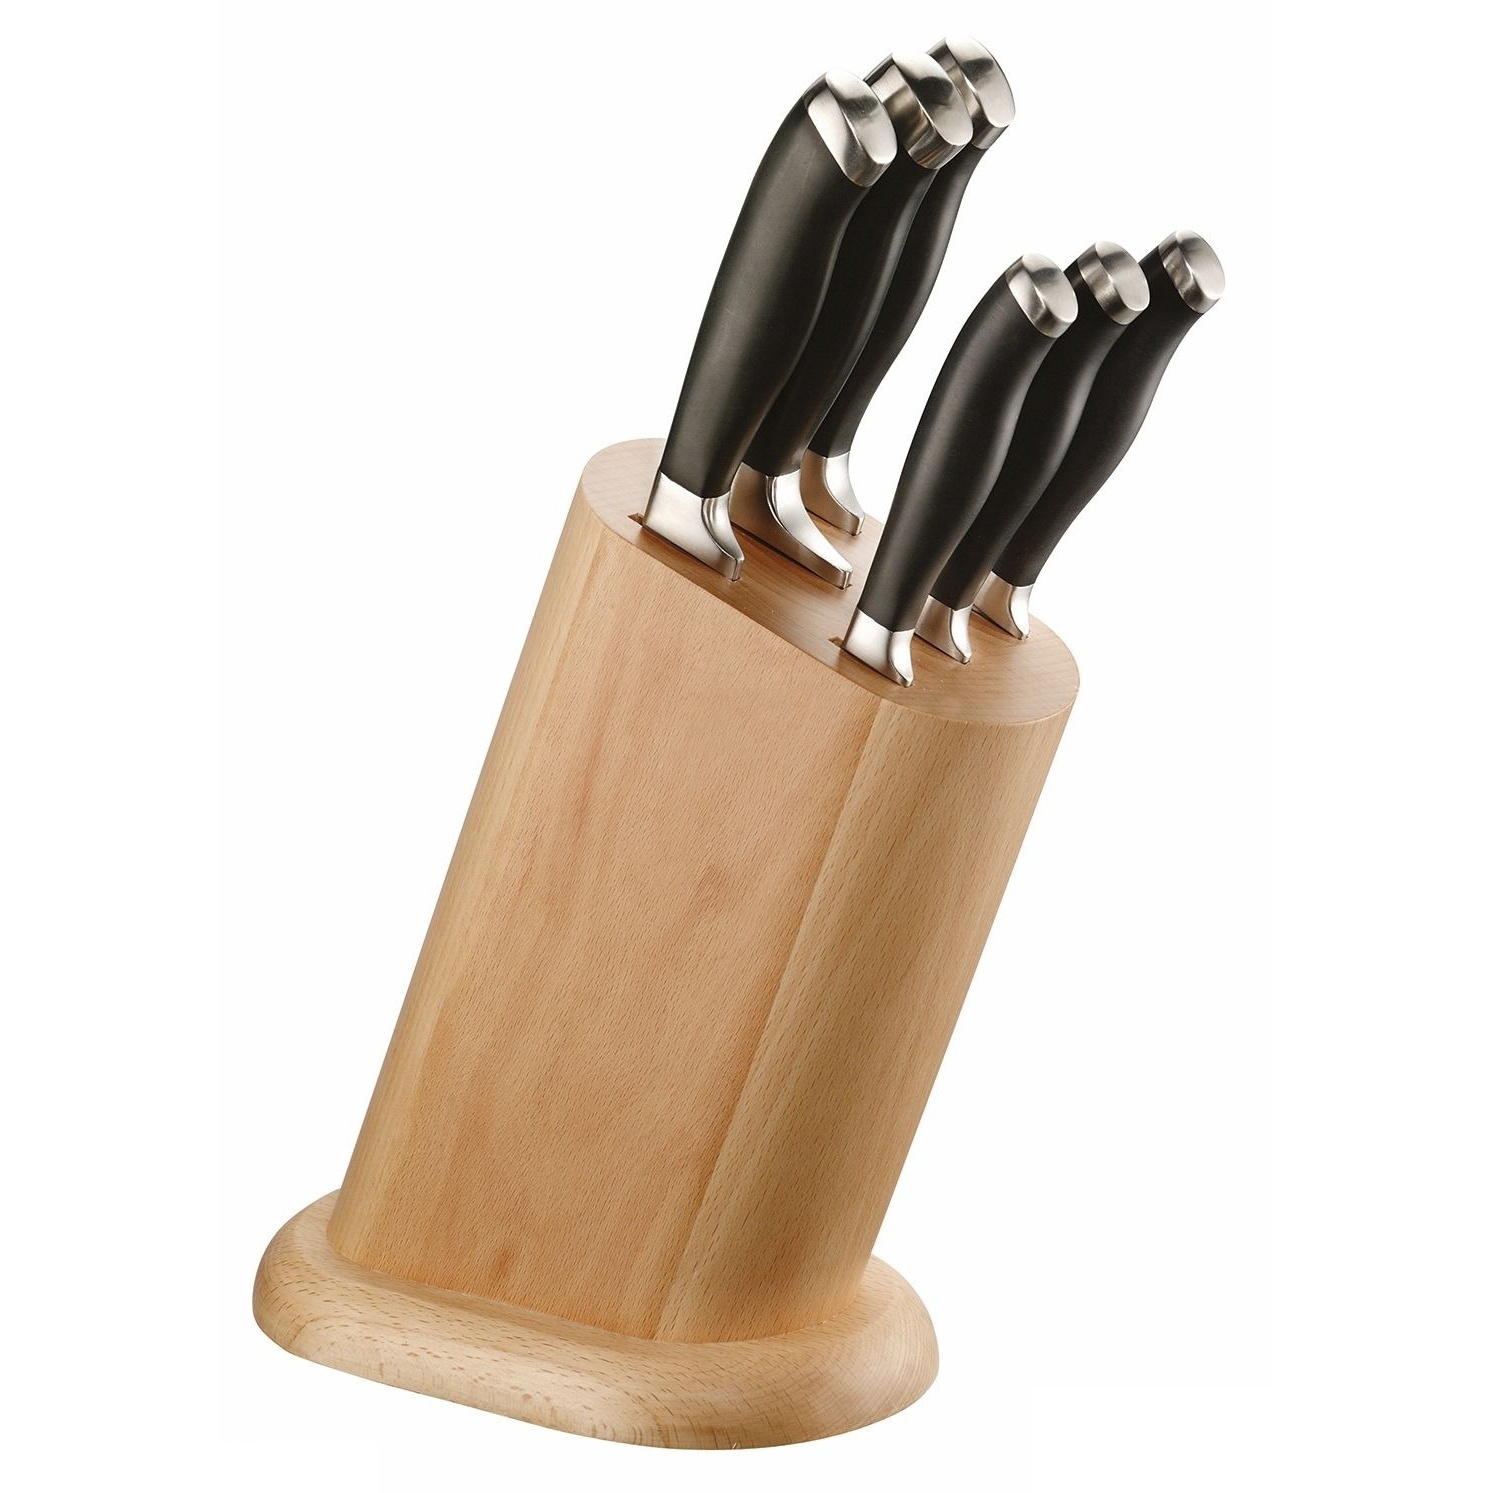 Набор ножей Pintinox 6 шт в деревянной подставке набор ножей в подставке 6 пр professional s